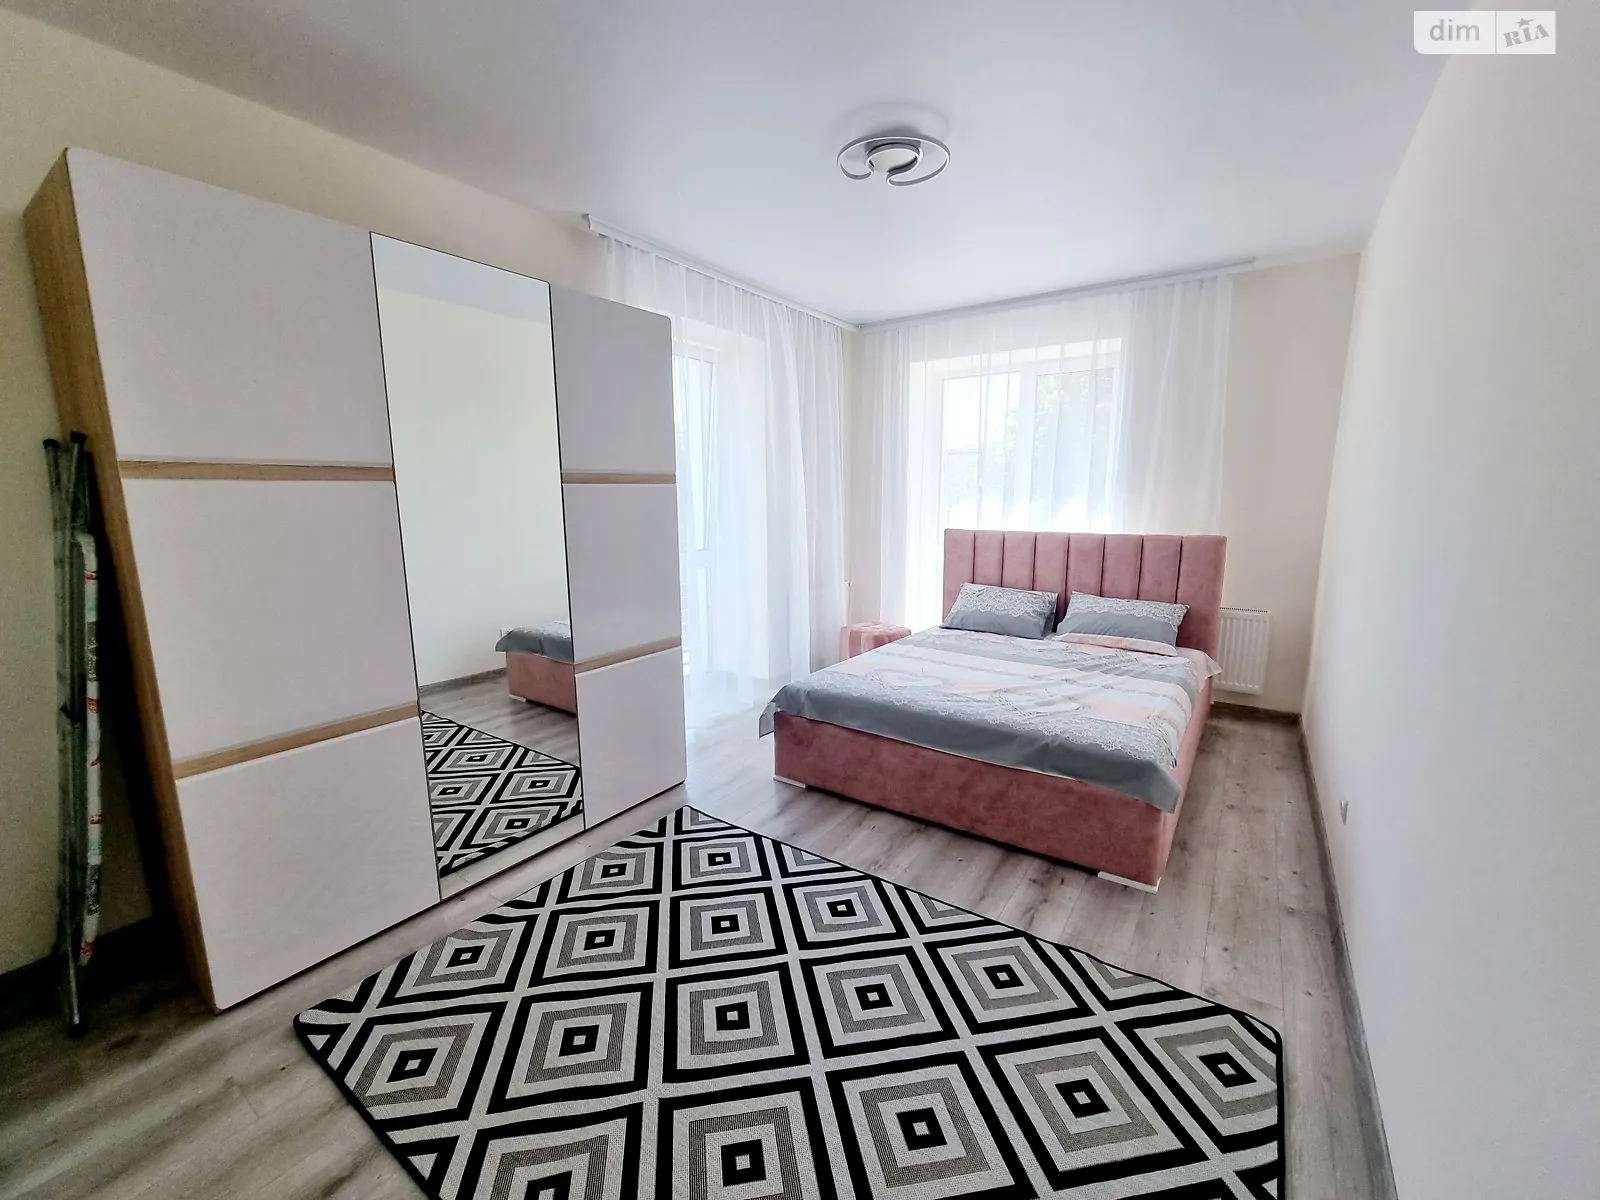 1-кімнатна квартира у Луцьку, цена: 1000 грн